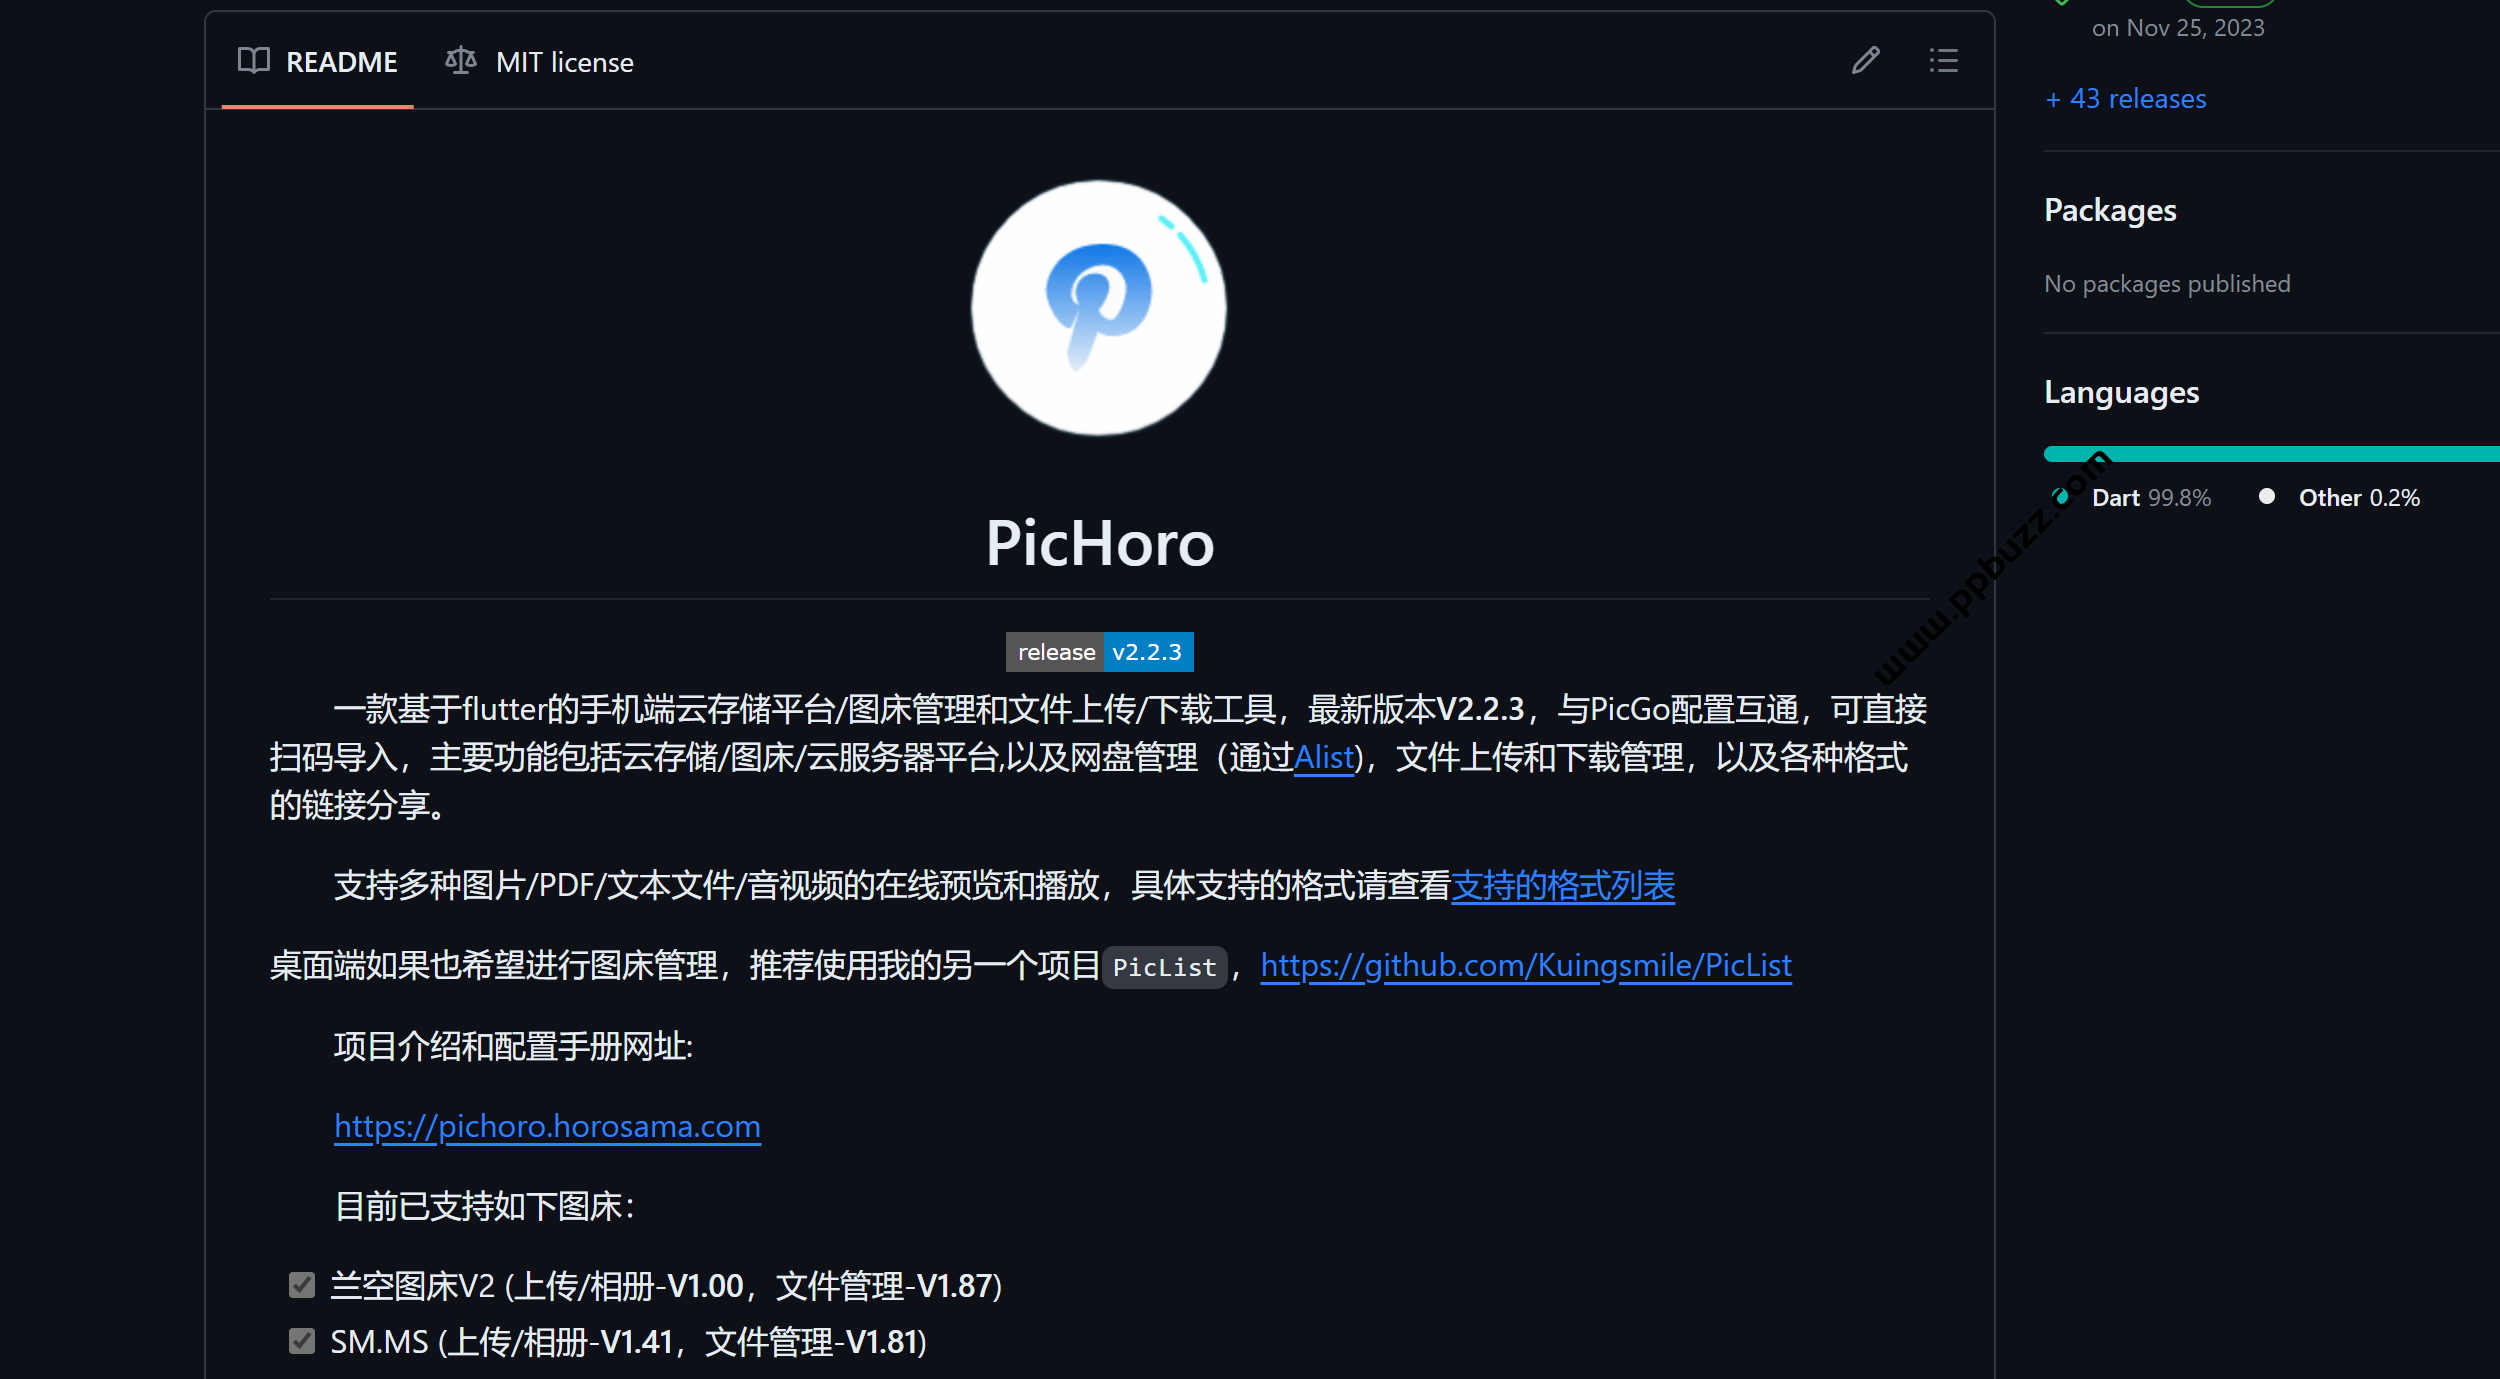 手机端云存储平台/图床管理和文件上传/下载工具 – PicHoro